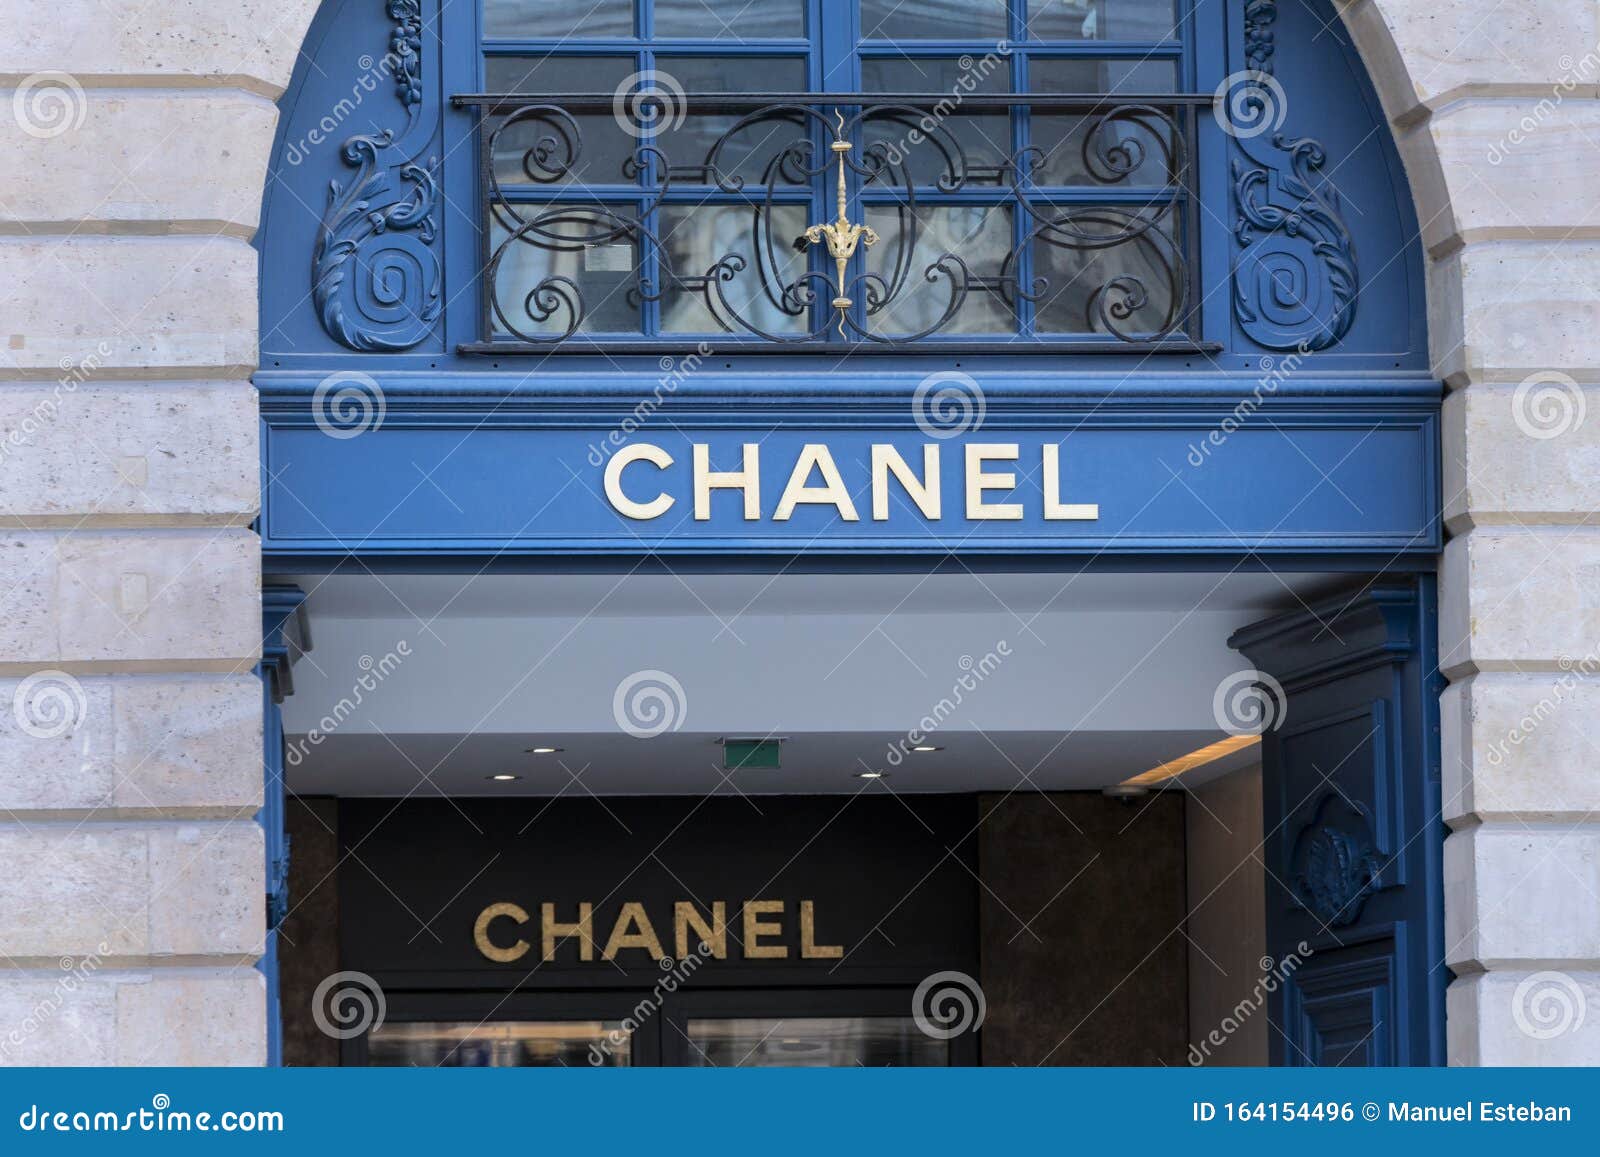 31 Rue Cambon: The World of Coco Chanel